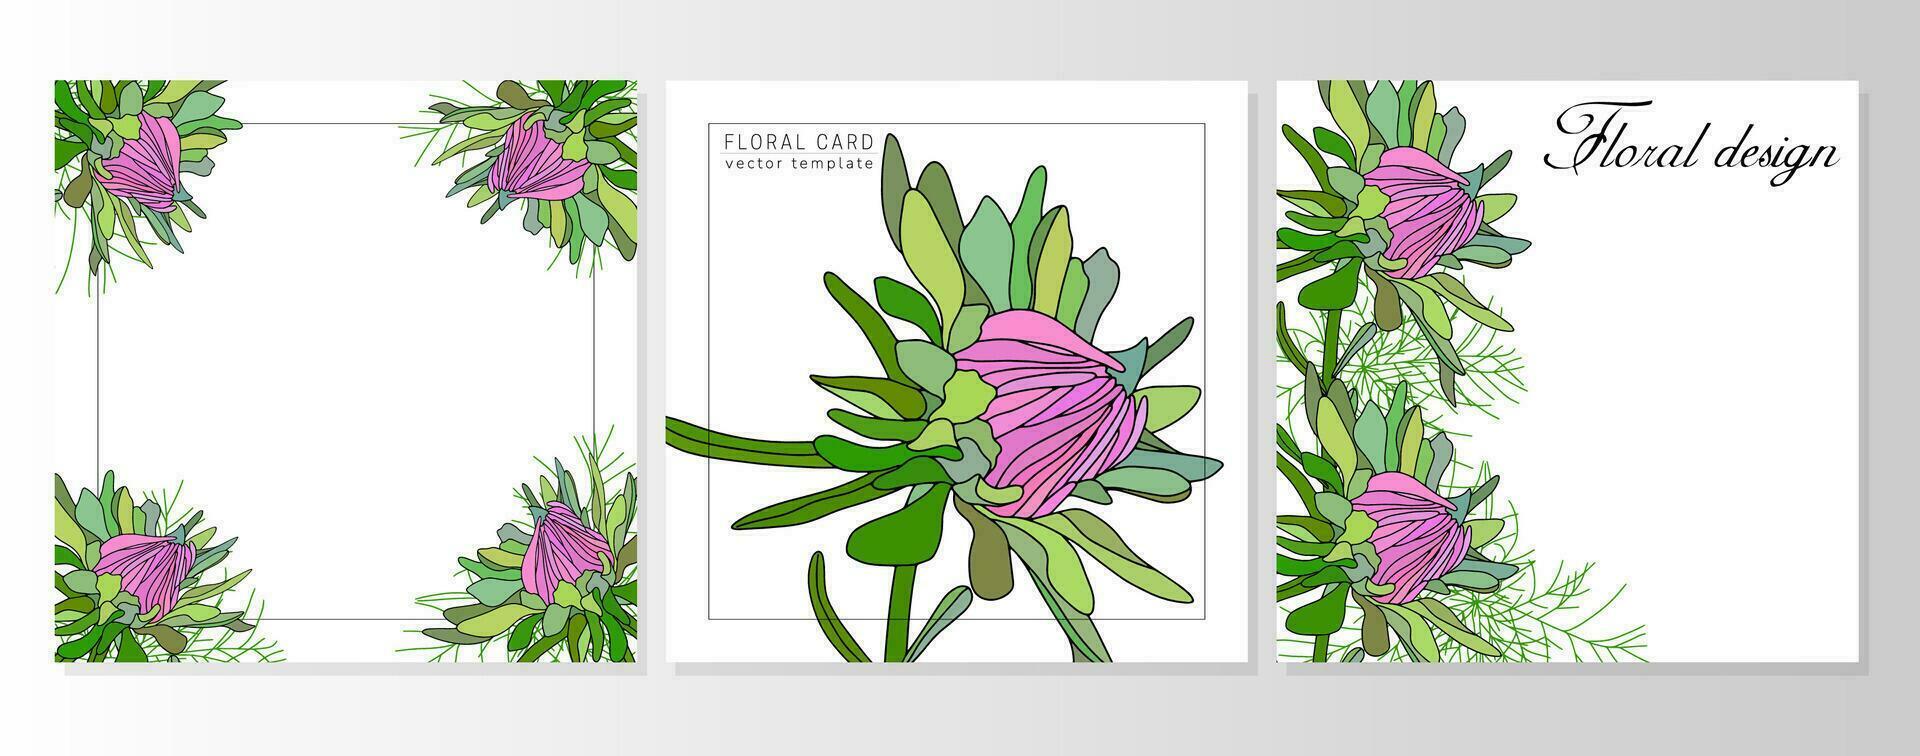 ensemble de salutation floral cartes, botanique arrière-plans, couvertures avec tomber asters, marguerites vecteur